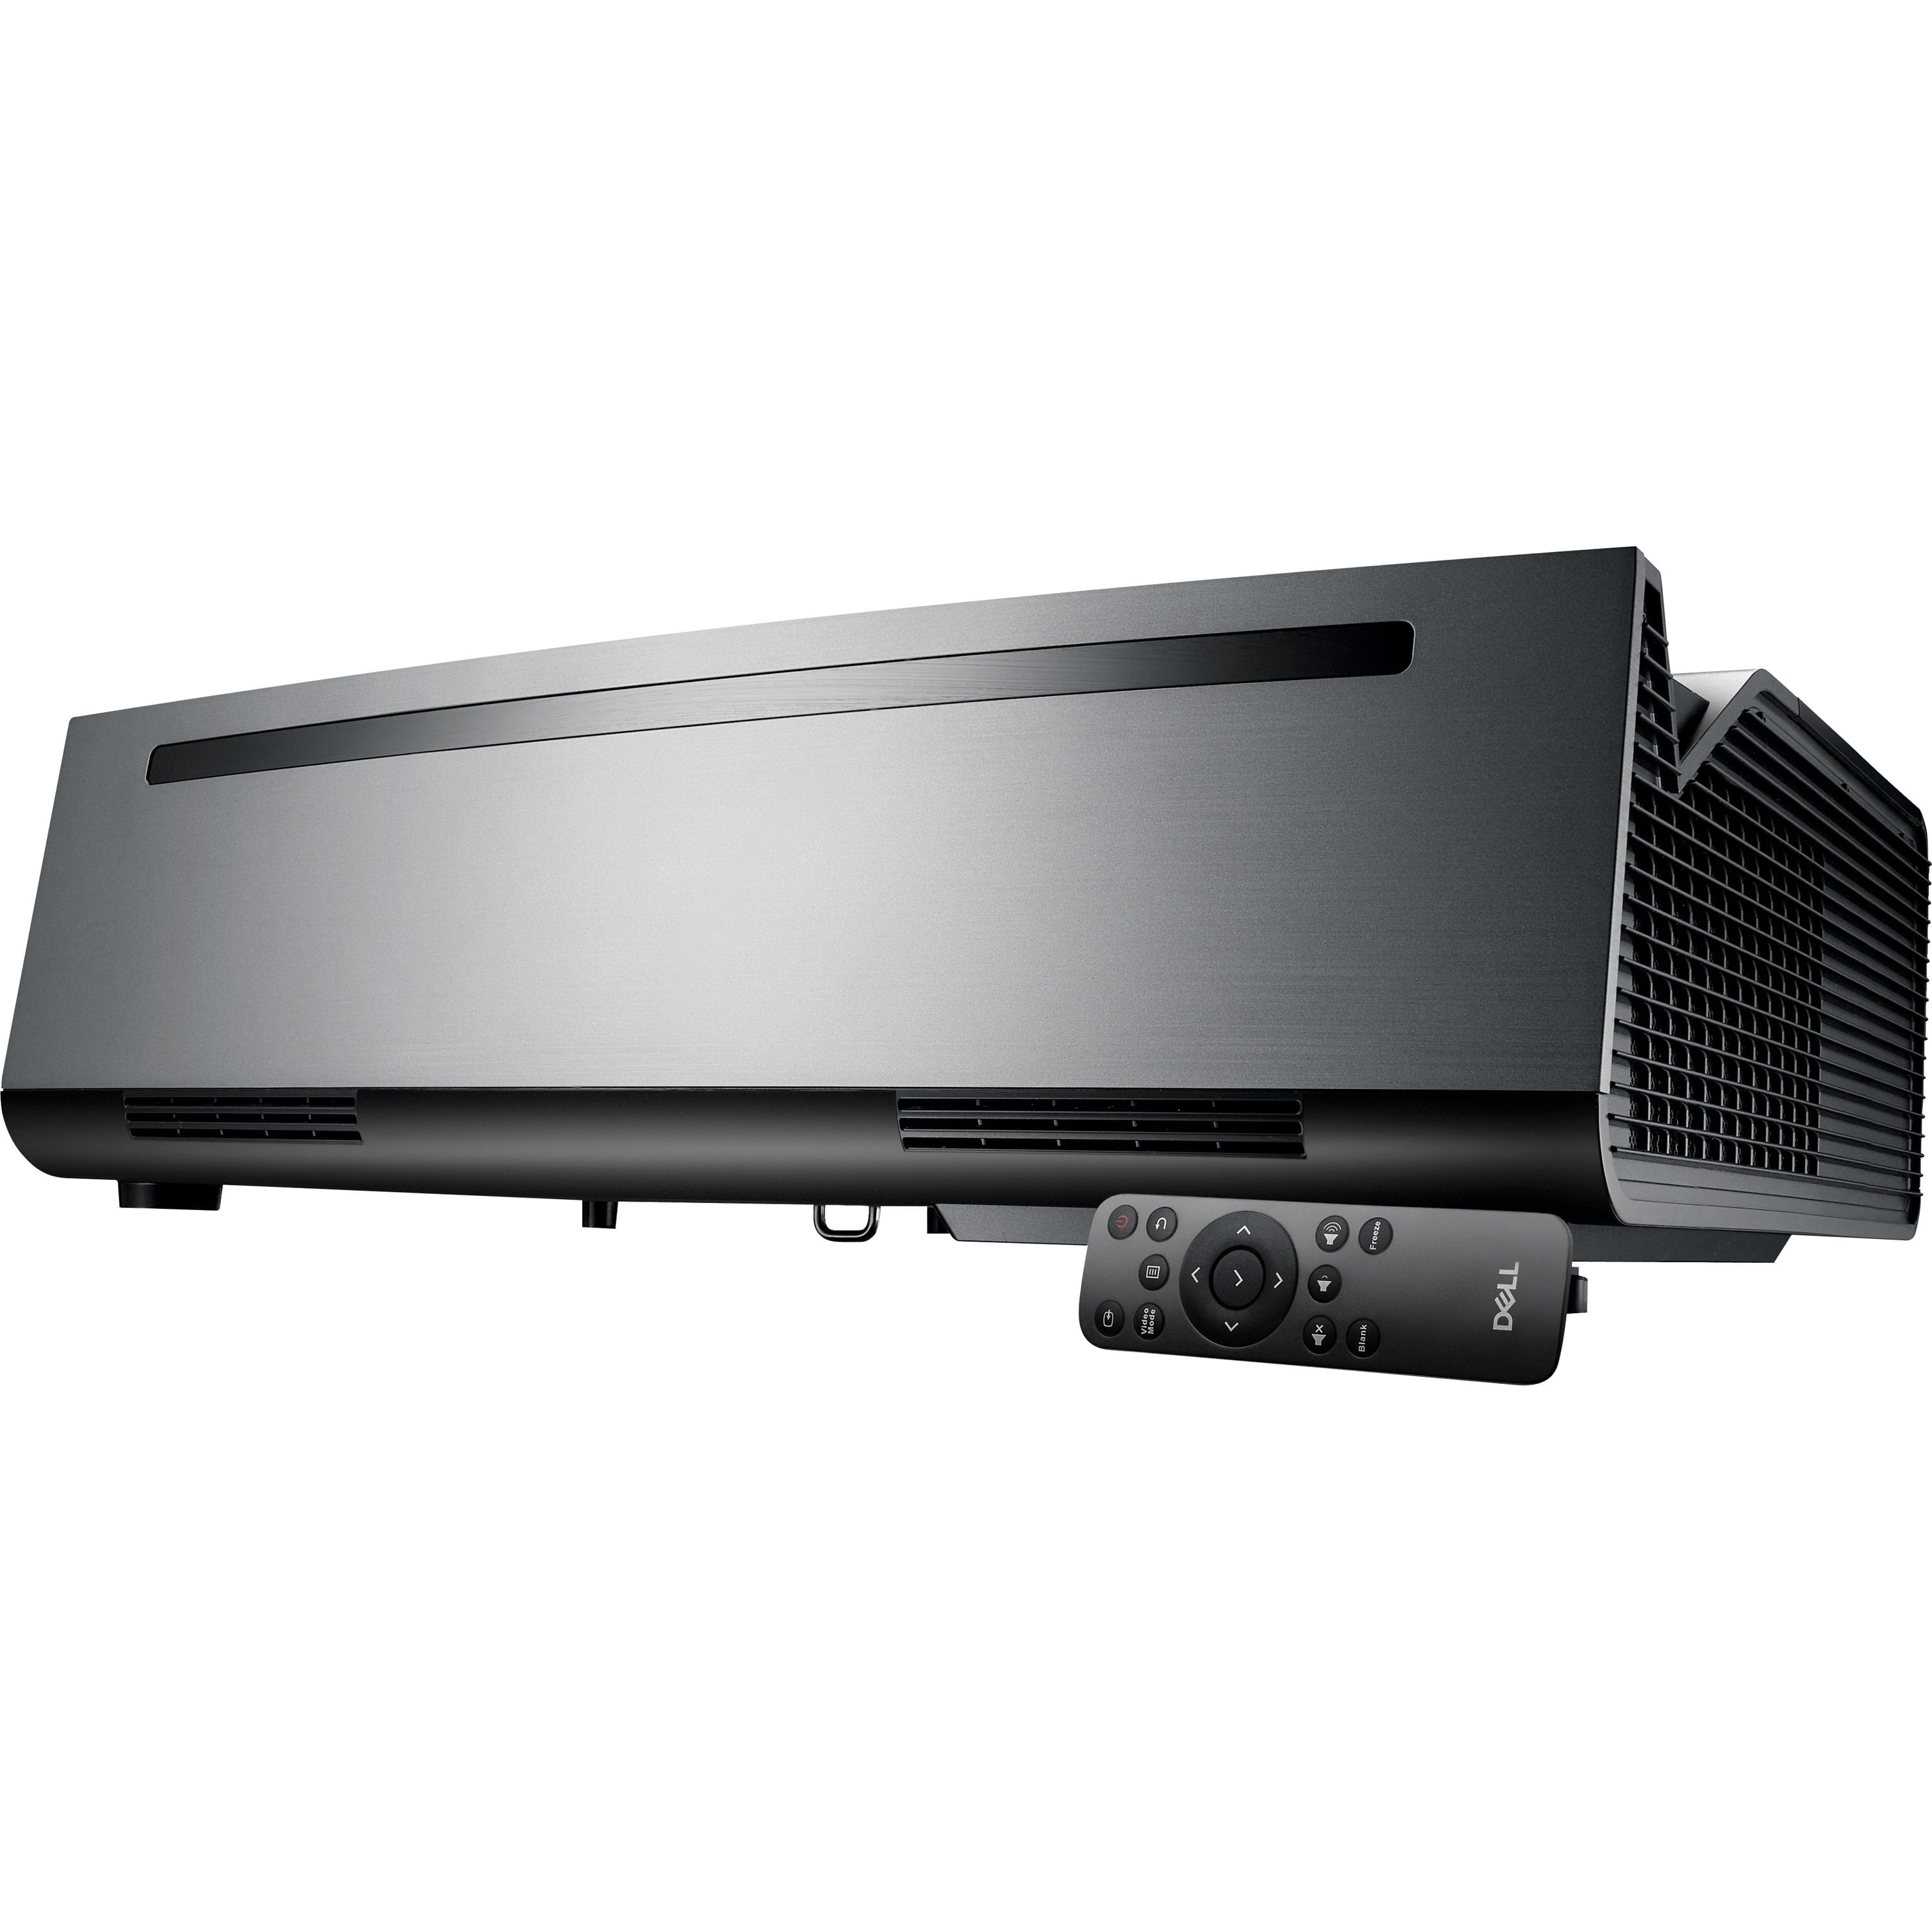 Dell PROJ-S718QL Advanced 4K Laser Projector - Black, Silver -